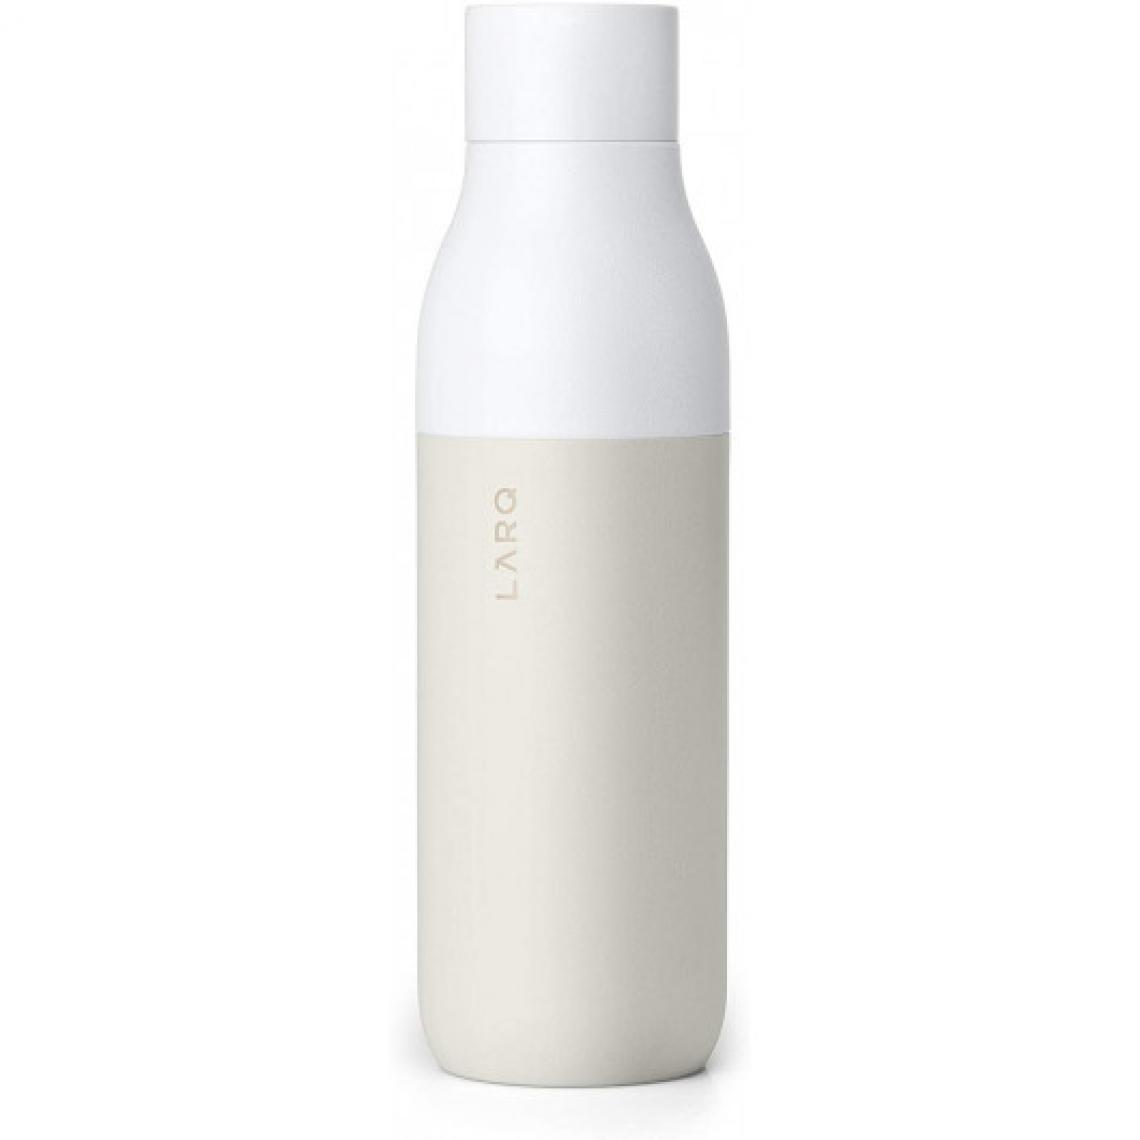 Larq - LARQ Bottle 500 ml, le système de purification de l'eau - Accessoire cuisson